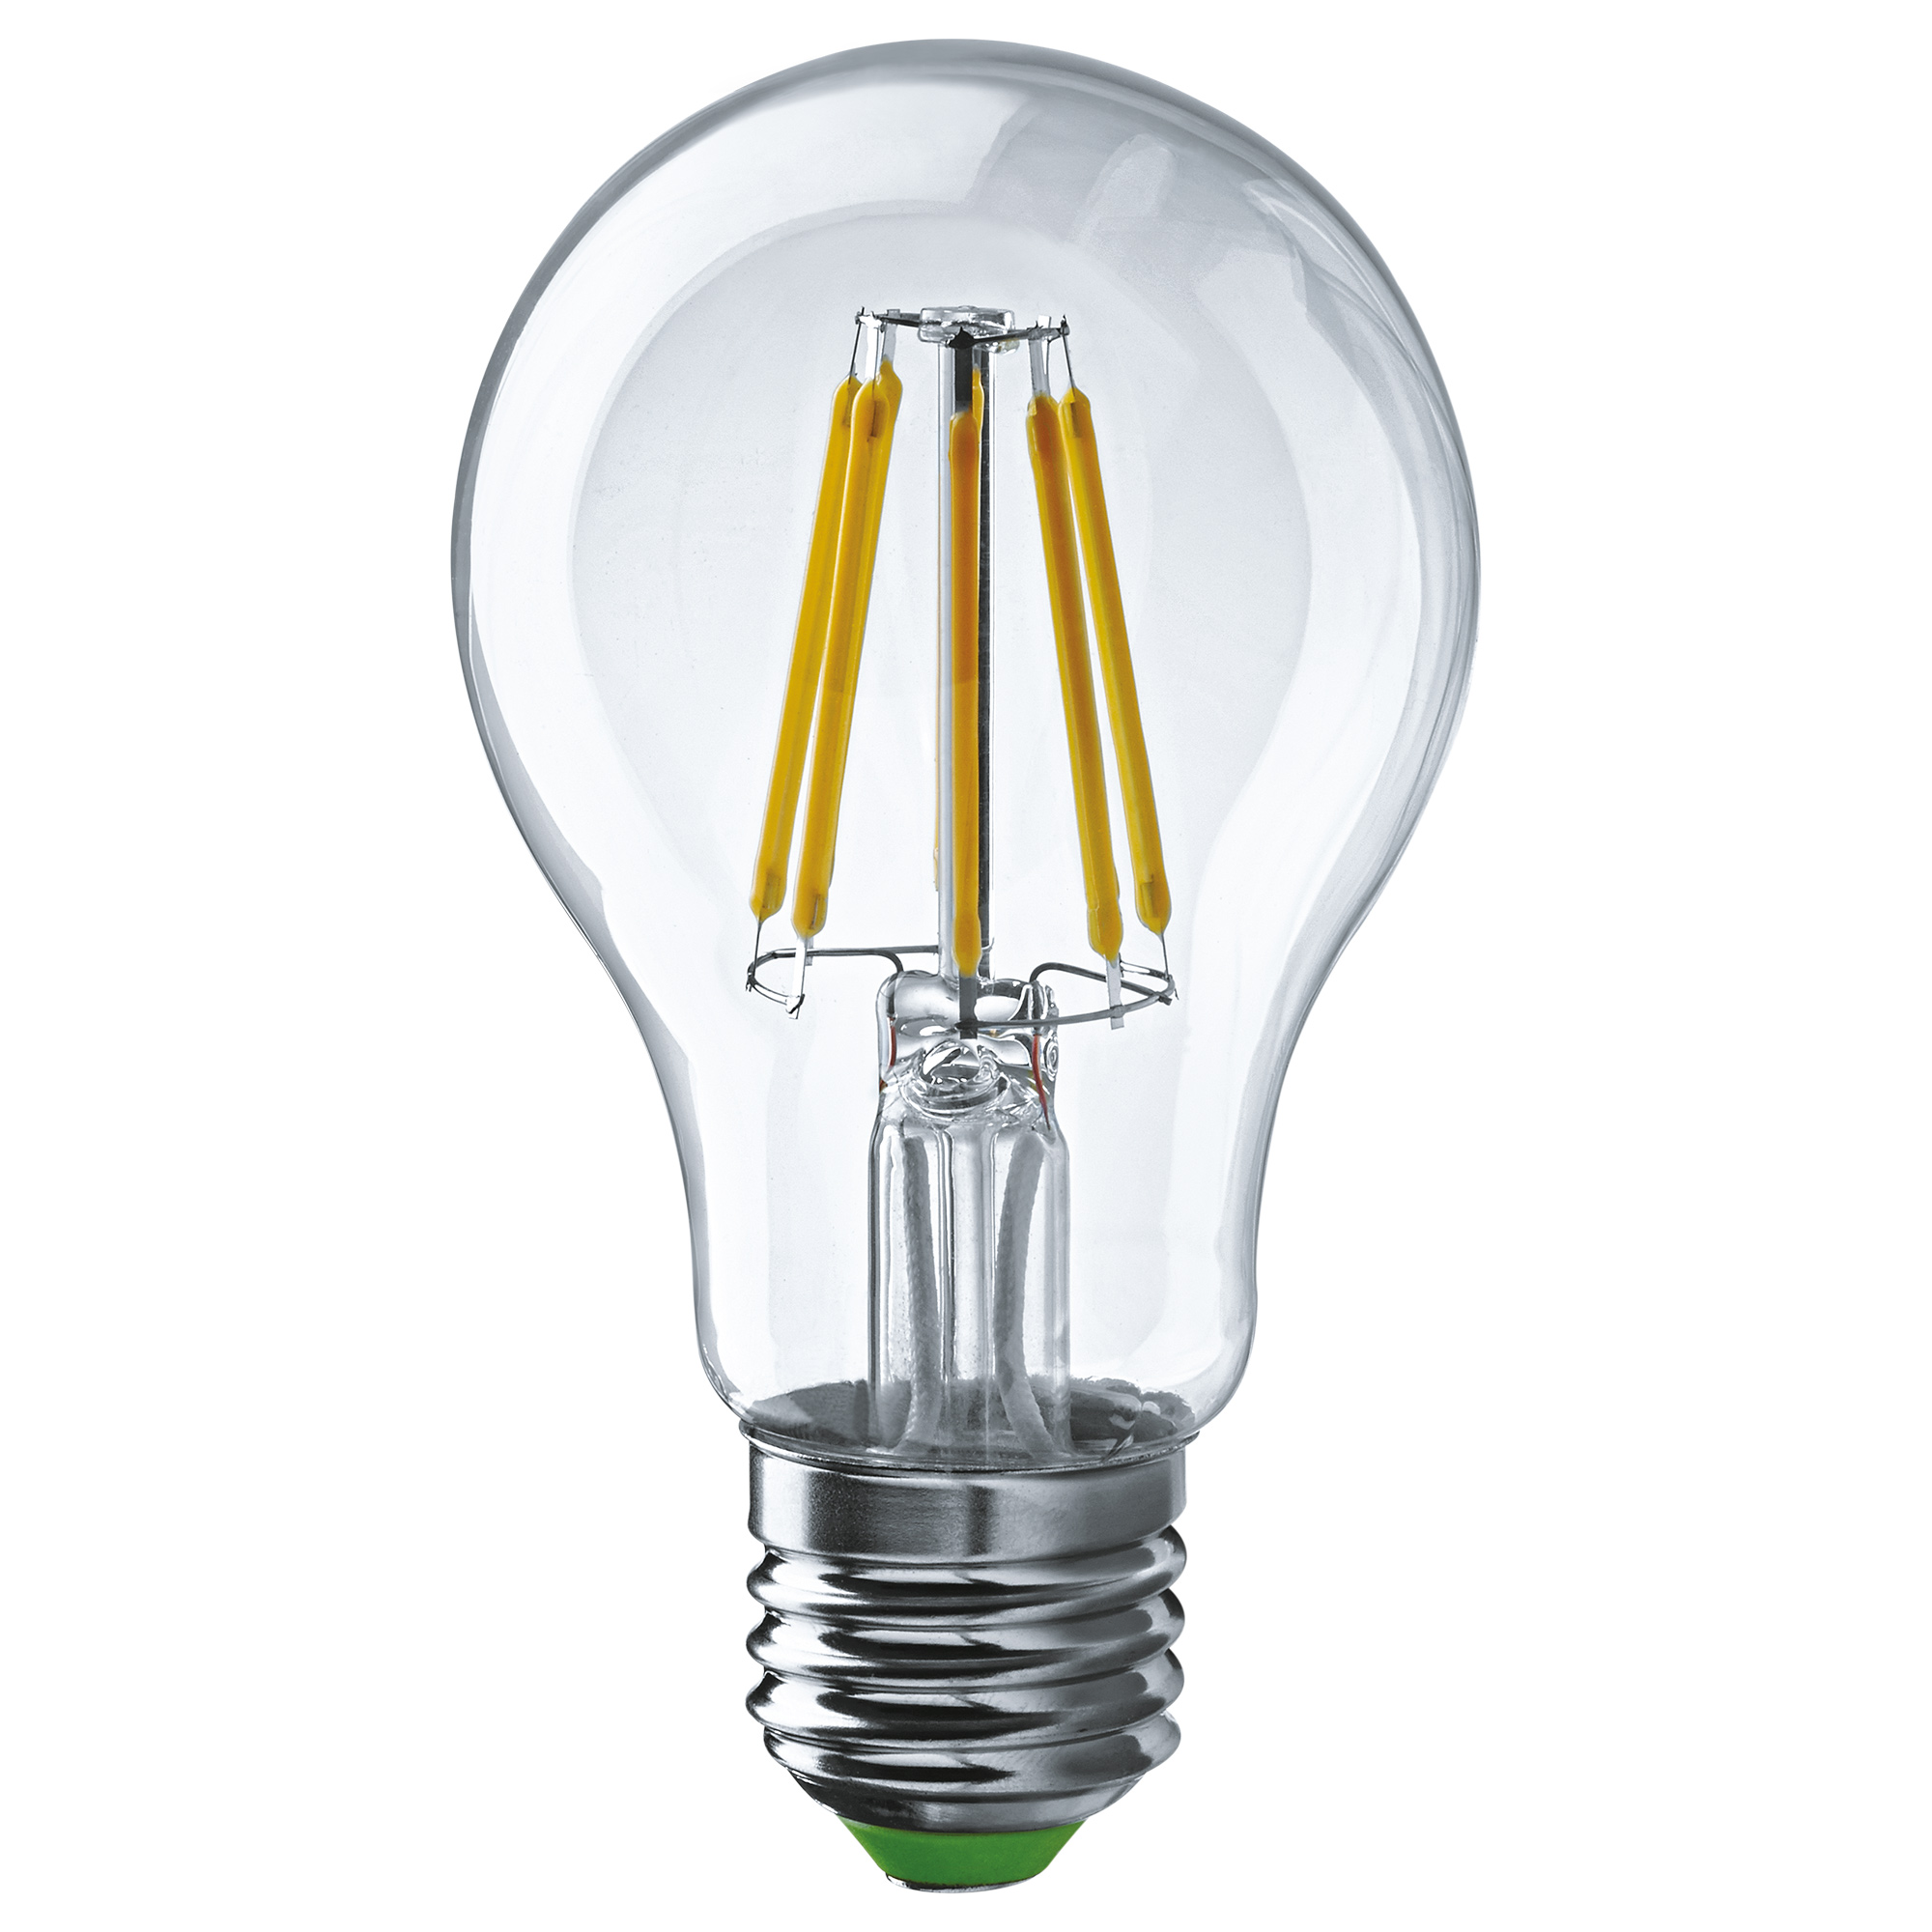 Лампа светодиодная Navigator груша прозрачная 8Вт цоколь E27 (теплый свет) лампа светодиодная navigator груша прозрачная 6вт цоколь e27 теплый свет